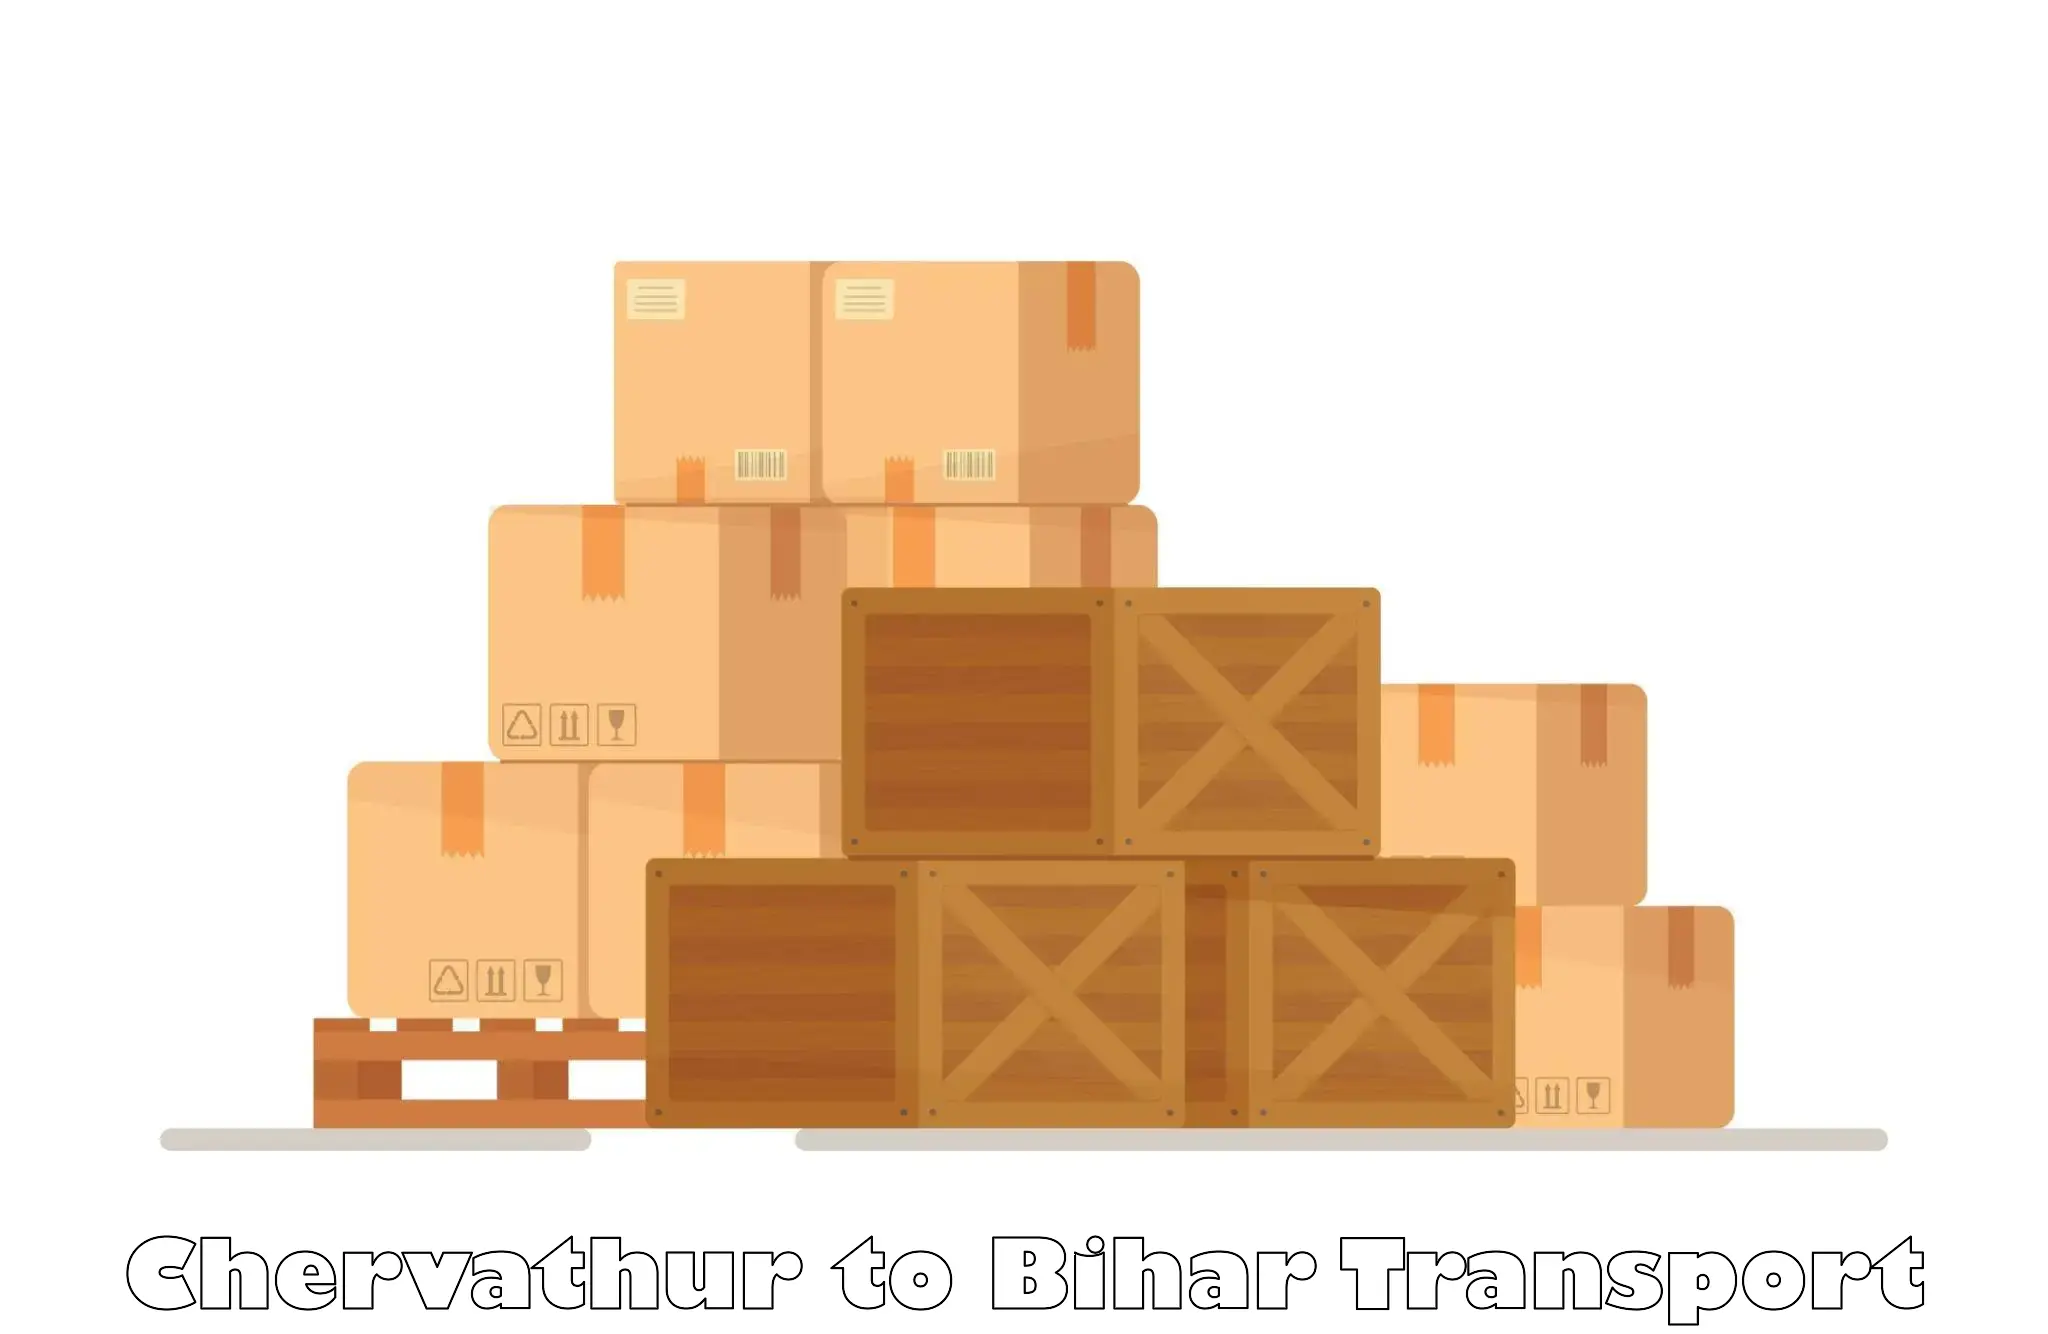 Cargo transportation services Chervathur to Katoria